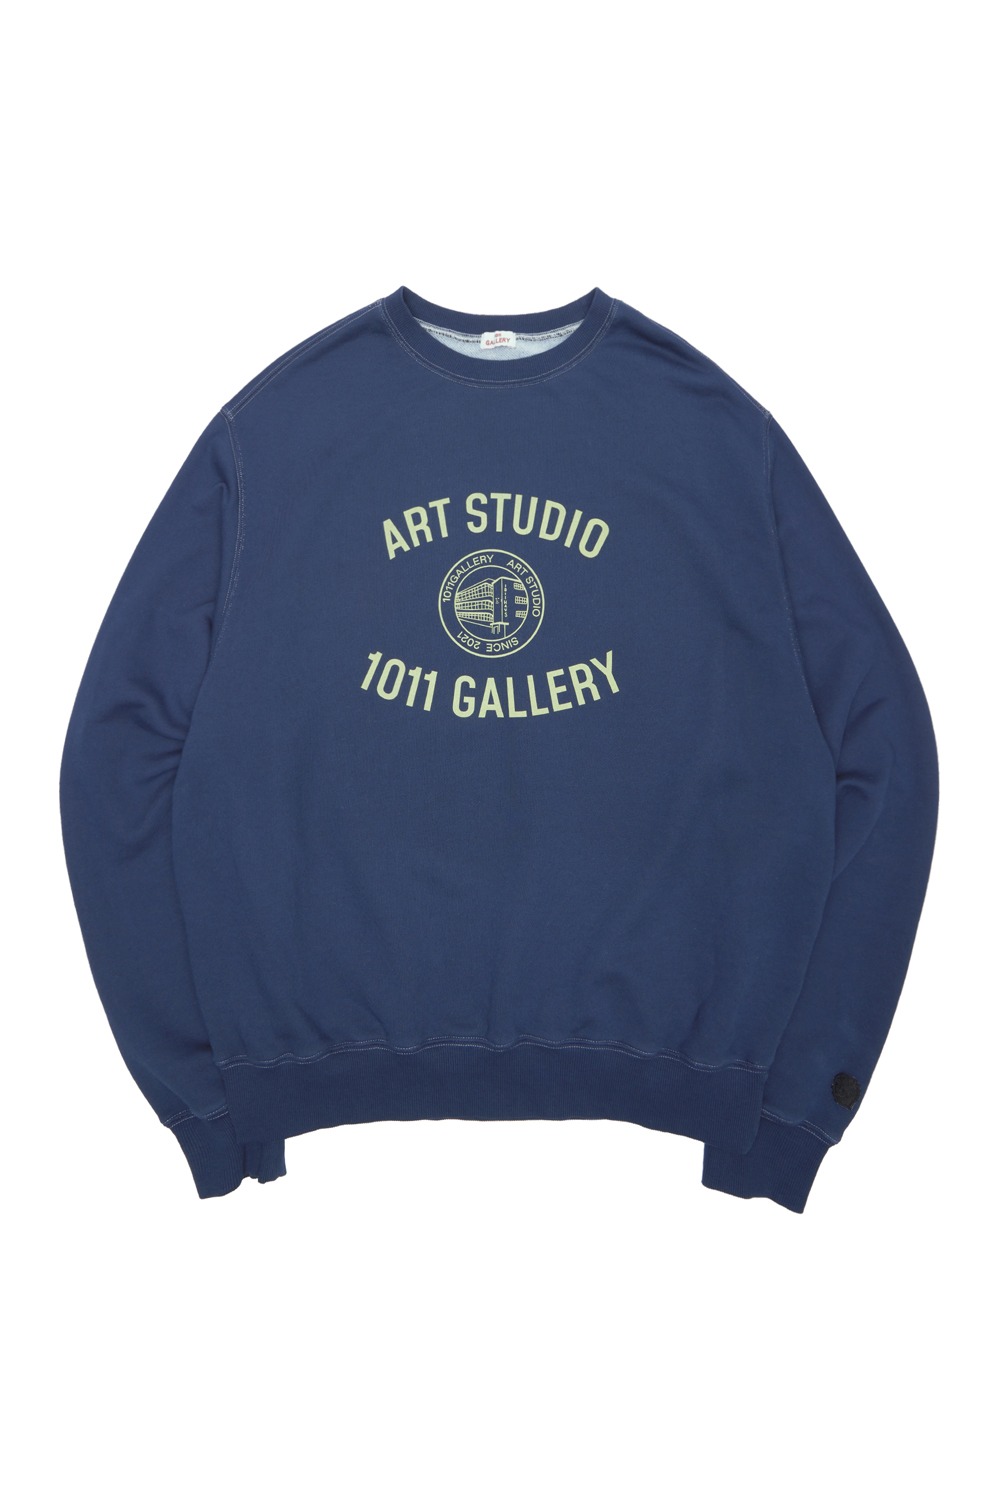 Gallery Haus Graphic Sweat Shirt - Navy